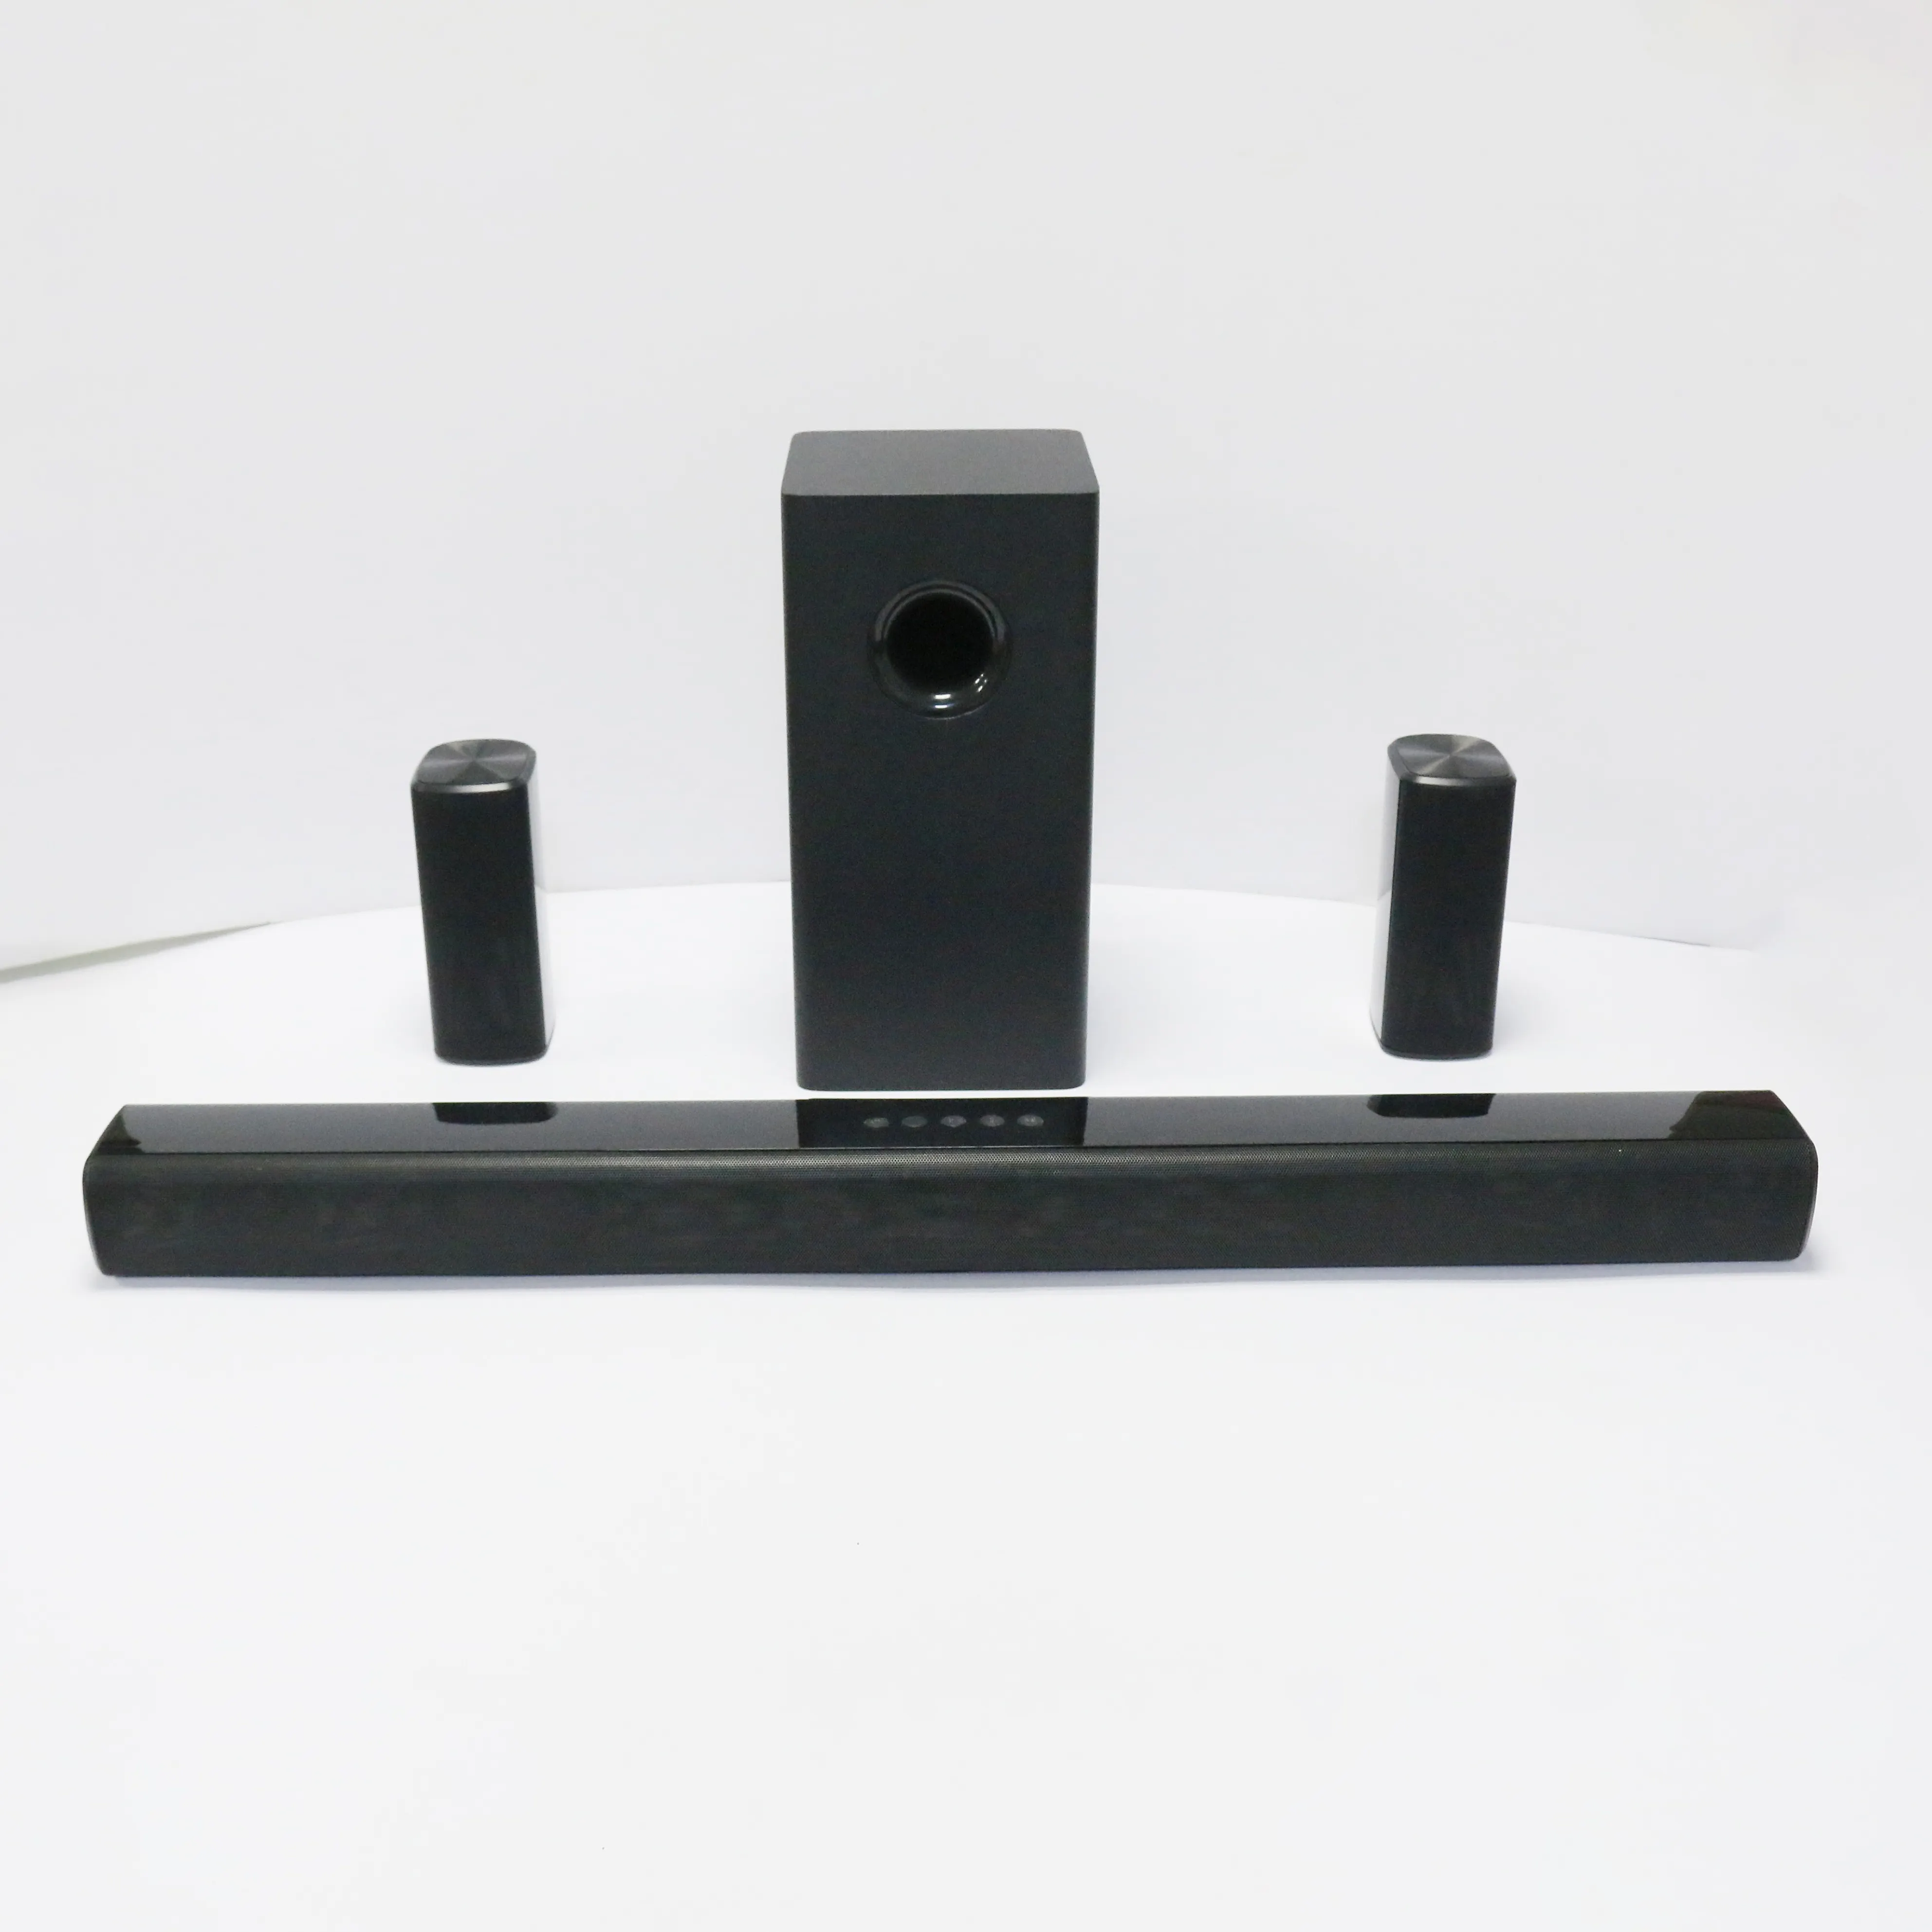 Speaker Bluetooth Home Theater dengan HDMI, Speaker Optik Bluetooth 5.1 125W RMS Dolby Soundbar dengan HDMI untuk TV